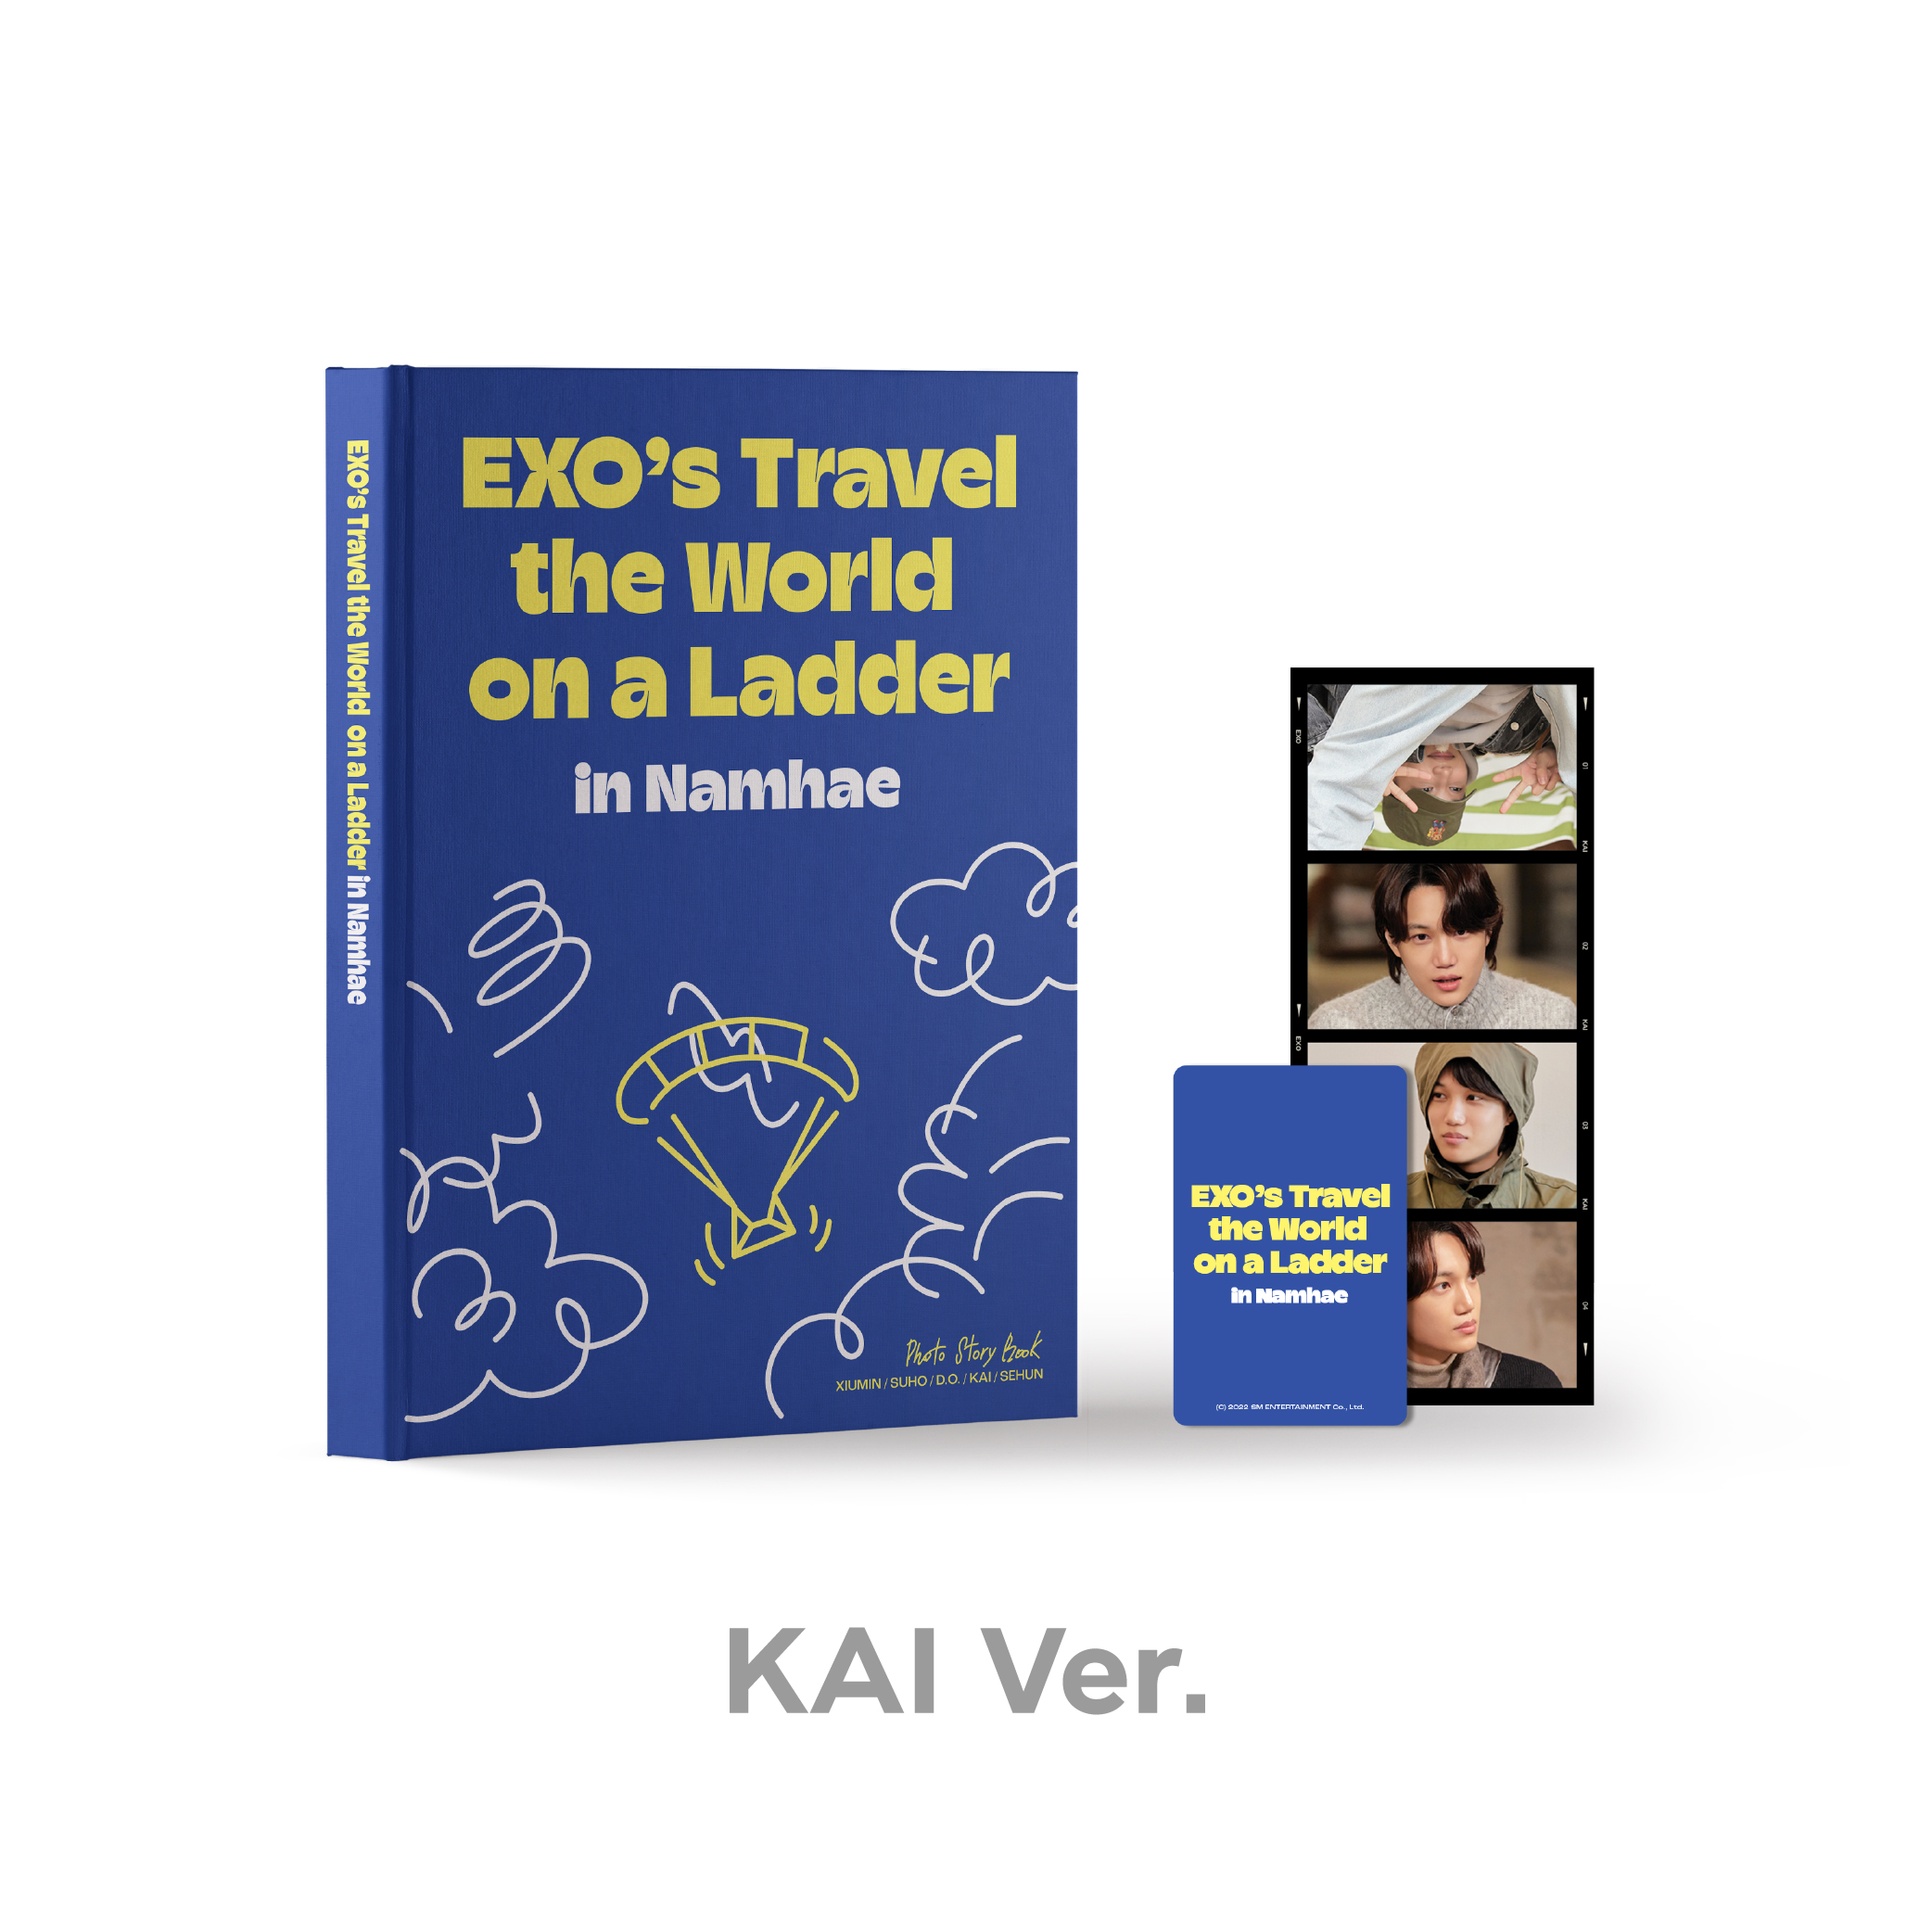 EXO(엑소) - <엑소의 사다리 타고 세계여행 - 남해 편> PHOTO STORY BOOK [KAI Ver.]